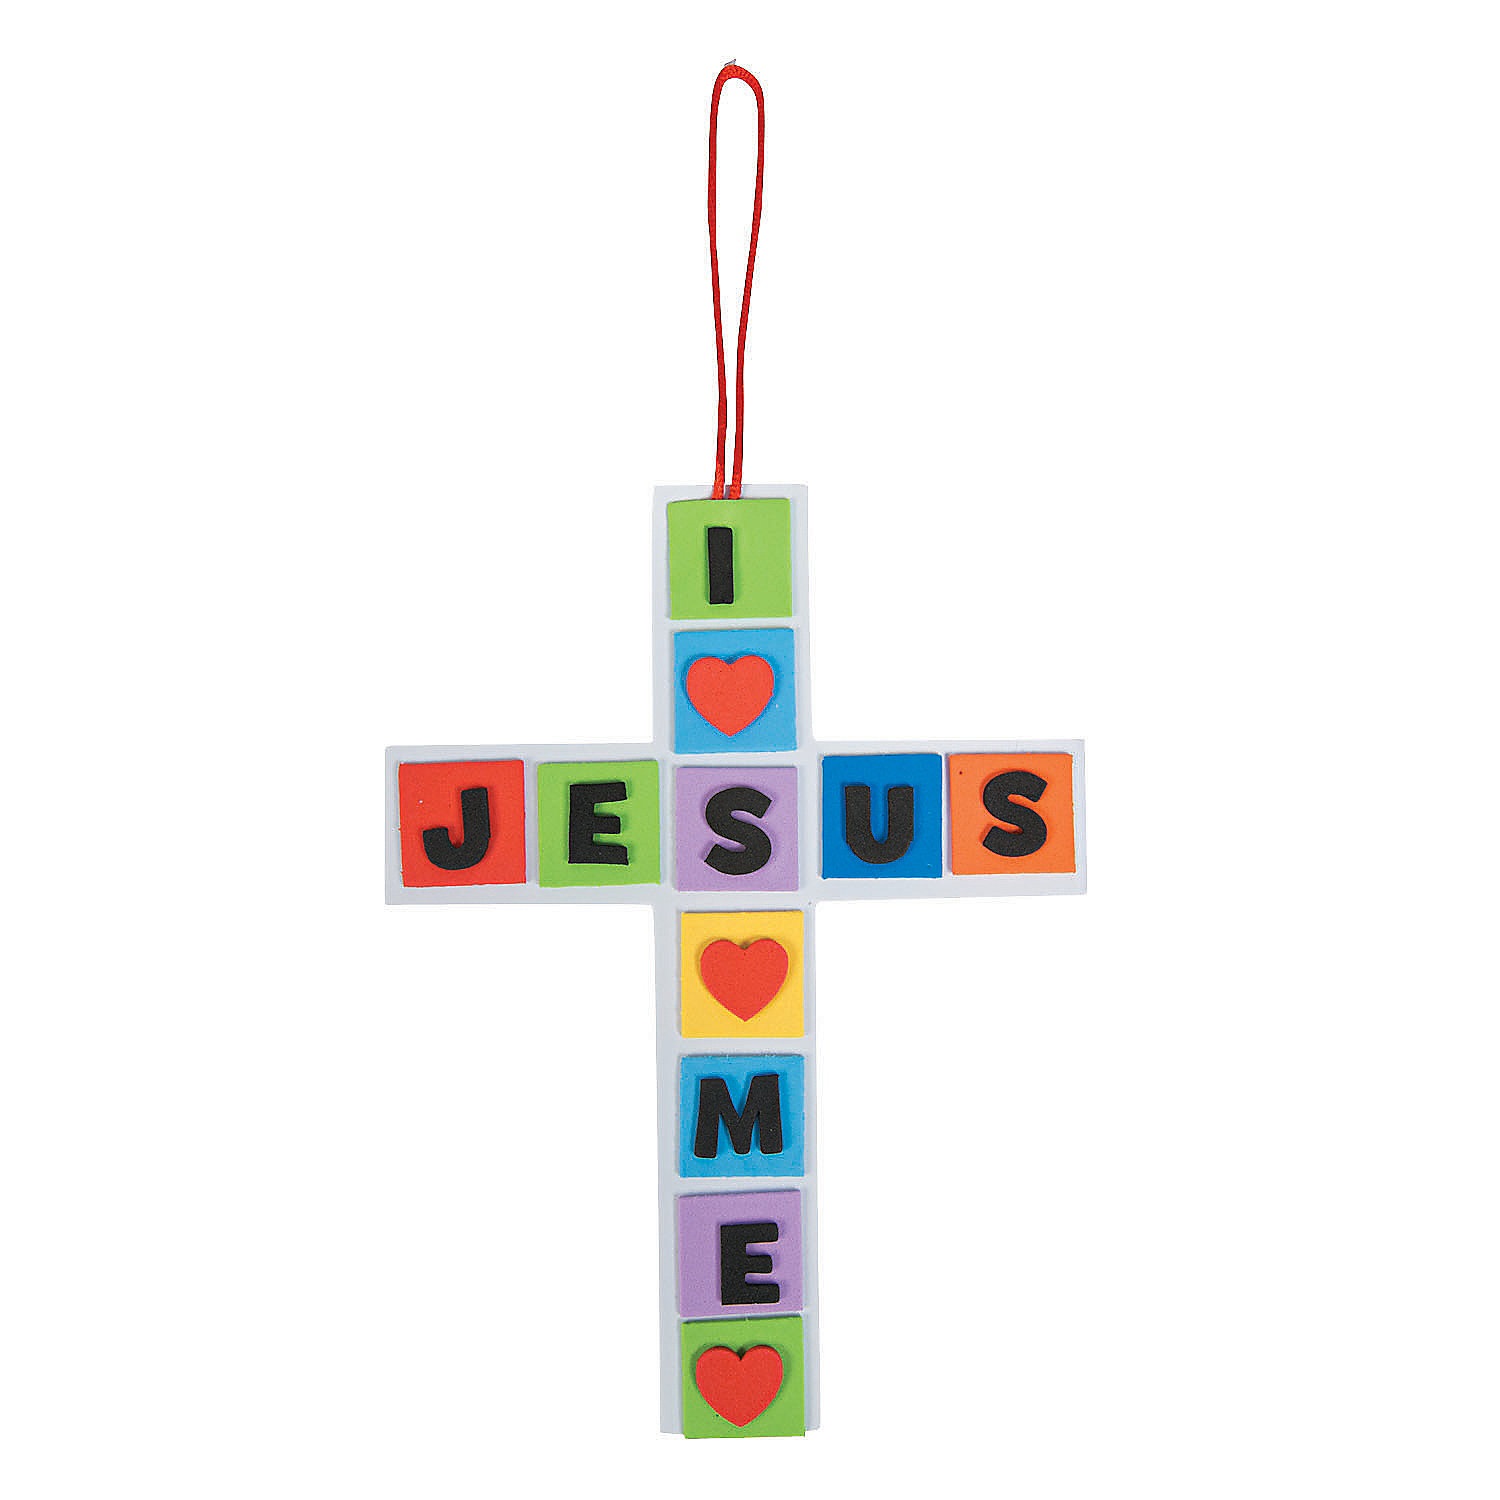 i-love-jesus-jesus-loves-me-cross-craft-kit-makes-12_48_9261